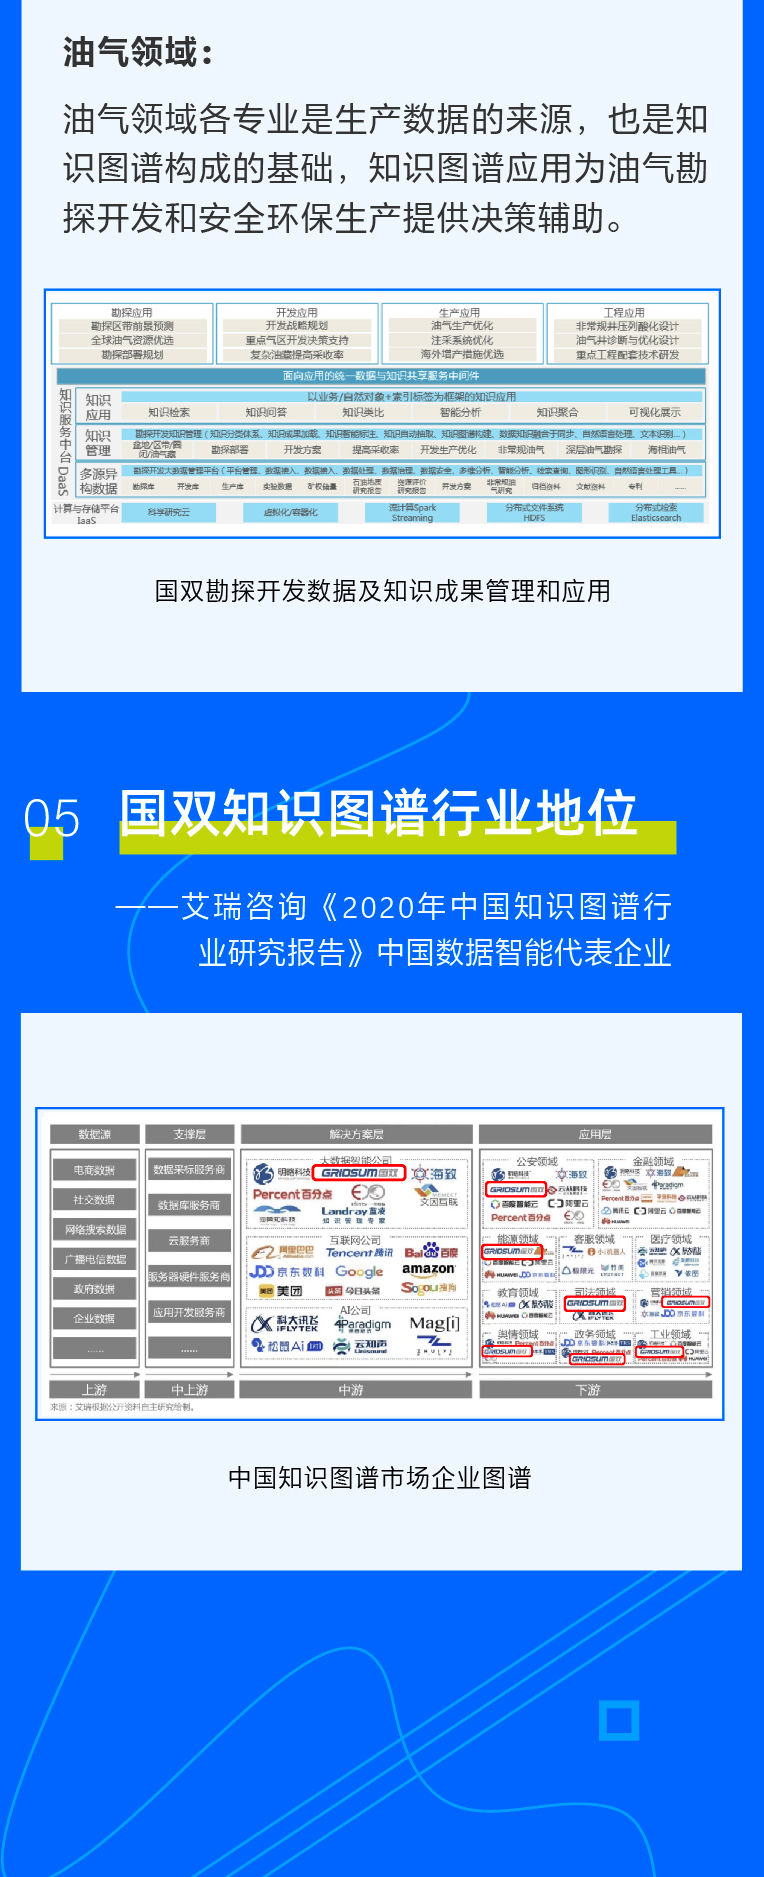 国双入选艾瑞《2020年中国知识图谱行业研究报告》，占据市场七大领域